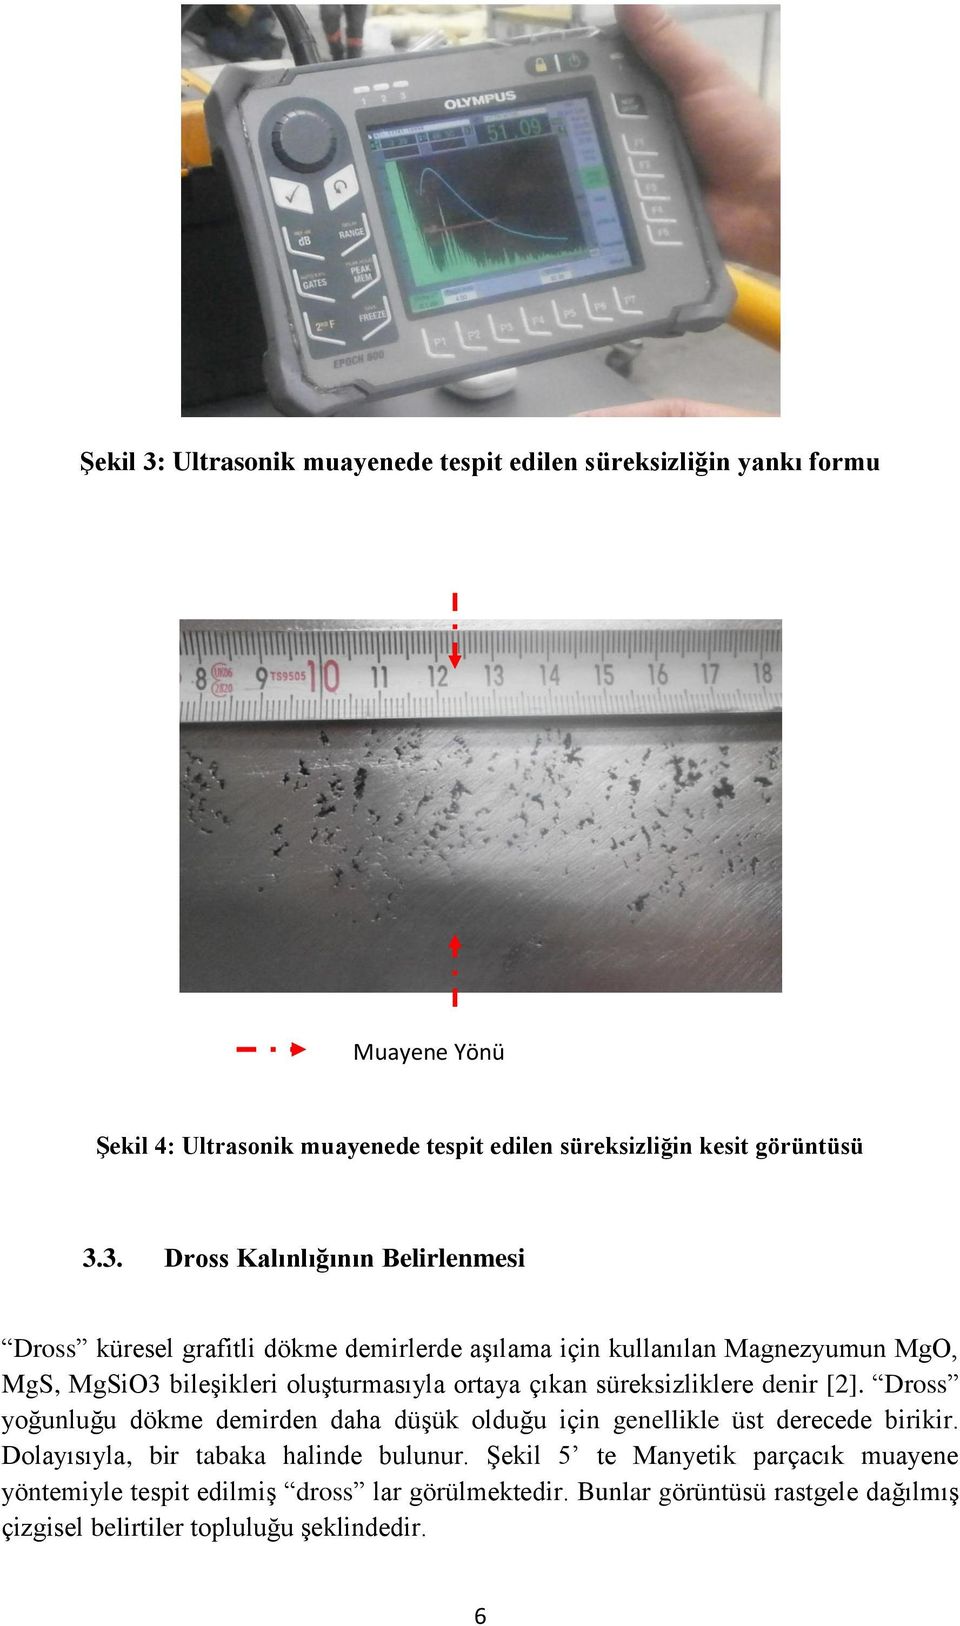 3. Dross Kalınlığının Belirlenmesi Dross küresel grafitli dökme demirlerde aşılama için kullanılan Magnezyumun MgO, MgS, MgSiO3 bileşikleri oluşturmasıyla ortaya